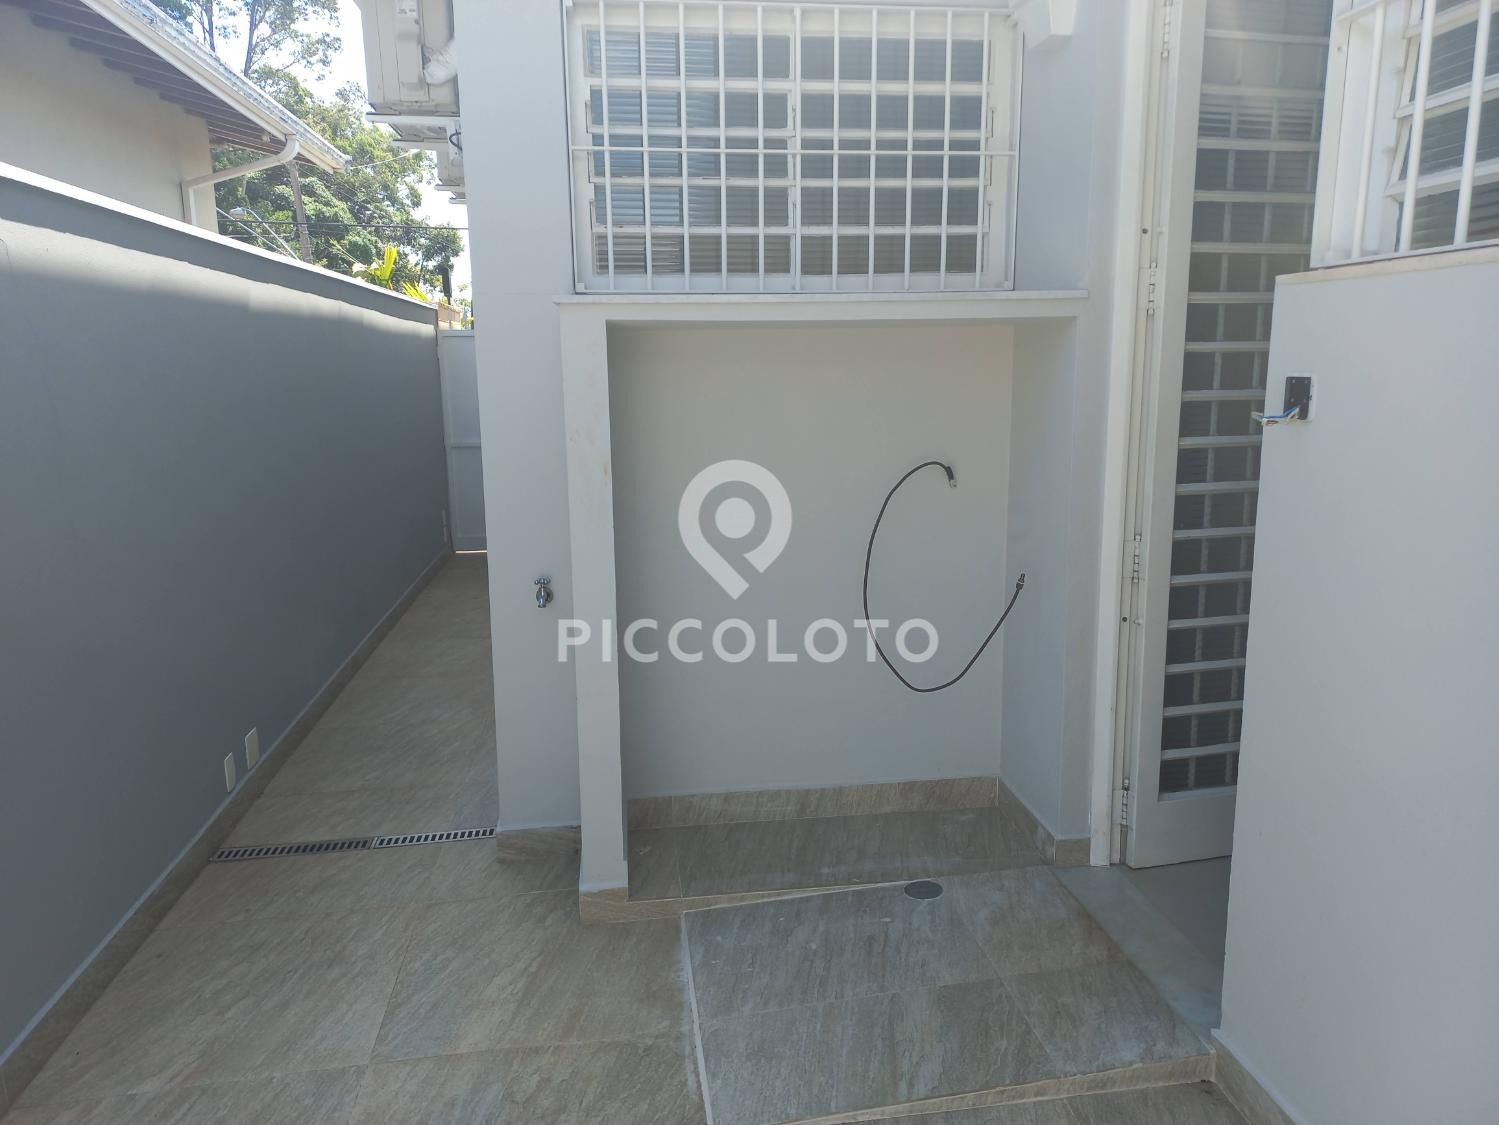 Piccoloto -Casa para alugar no Jardim Guanabara em Campinas